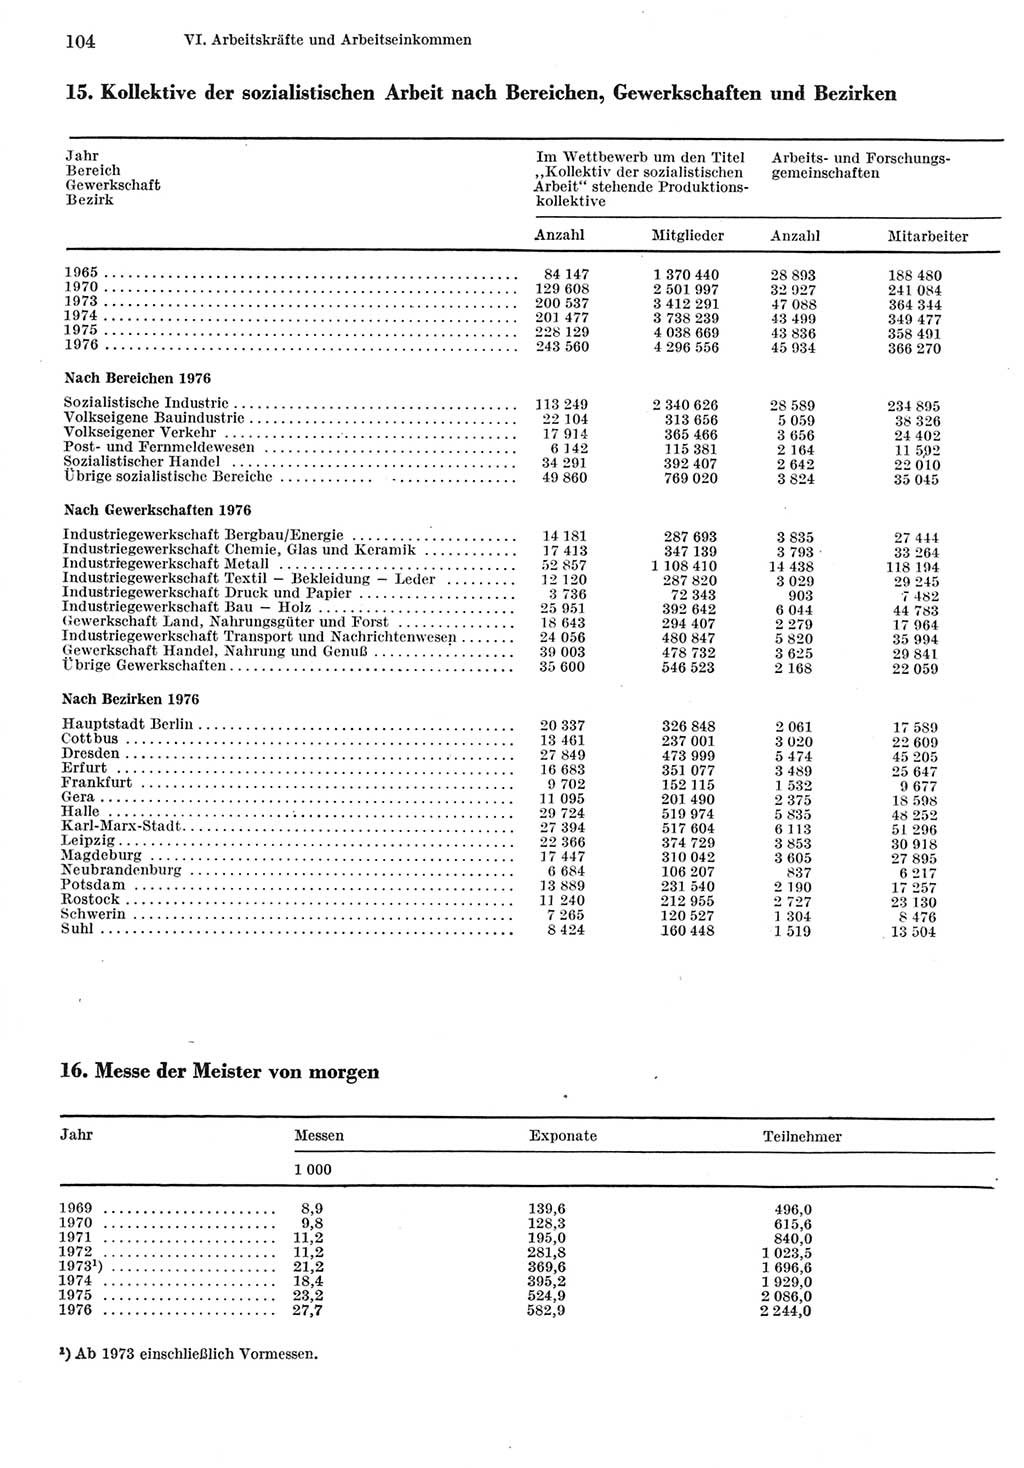 Statistisches Jahrbuch der Deutschen Demokratischen Republik (DDR) 1977, Seite 104 (Stat. Jb. DDR 1977, S. 104)